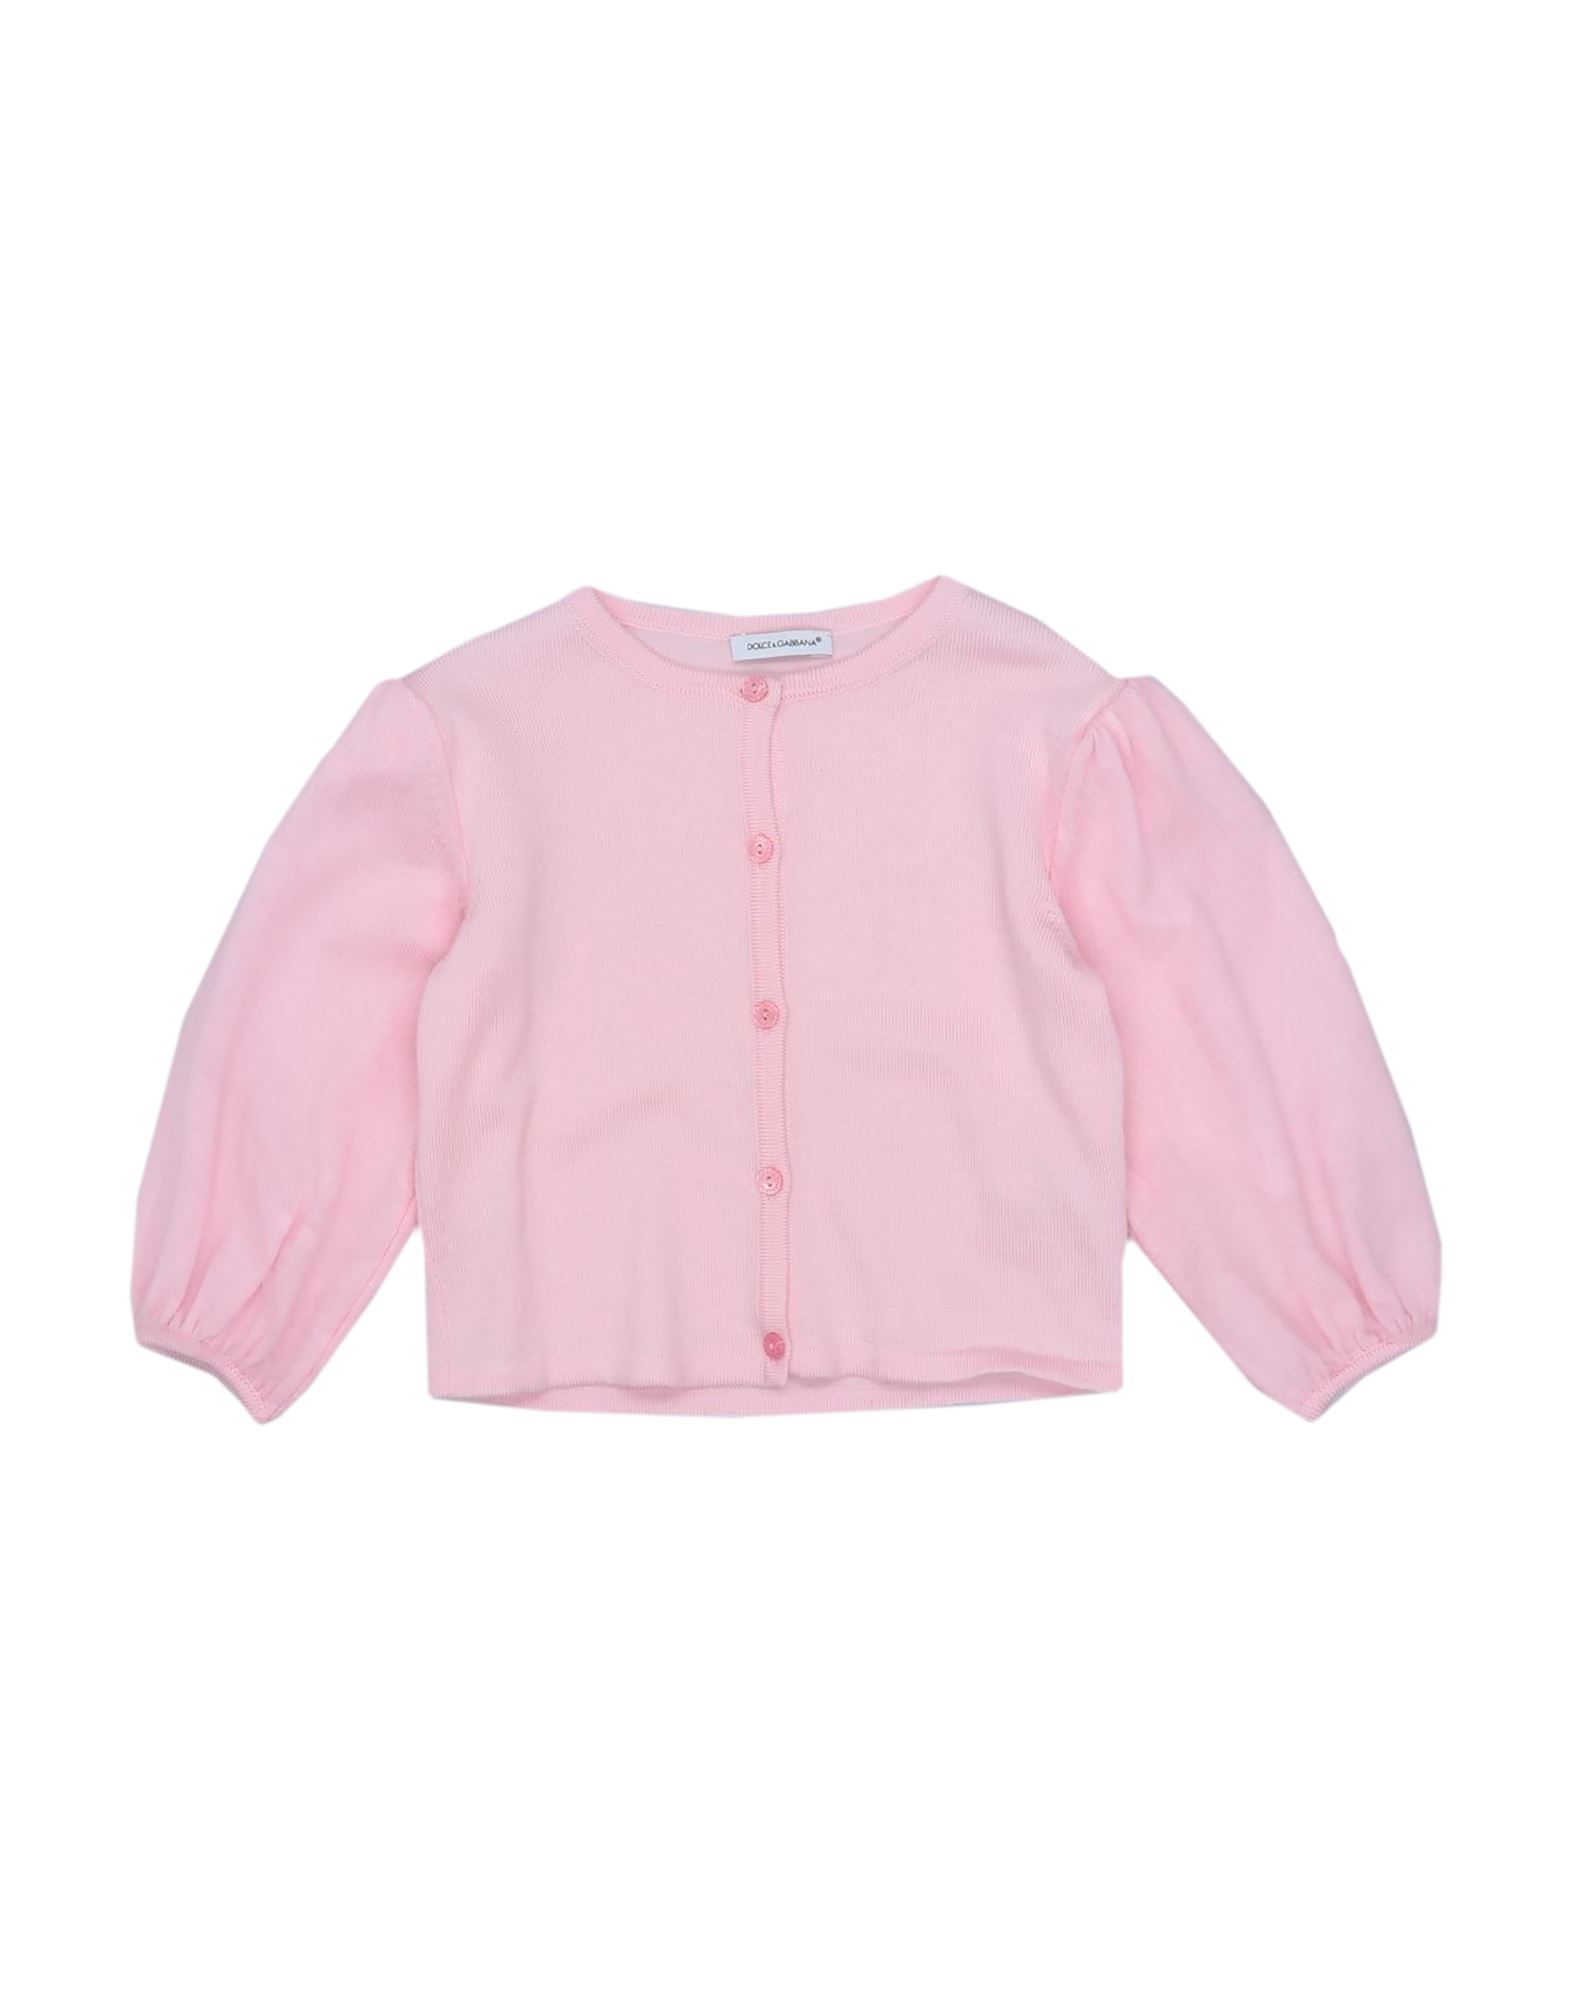 Dolce & Gabbana Kids'  Toddler Girl Cardigan Pink Size 4 Virgin Wool, Polyamide